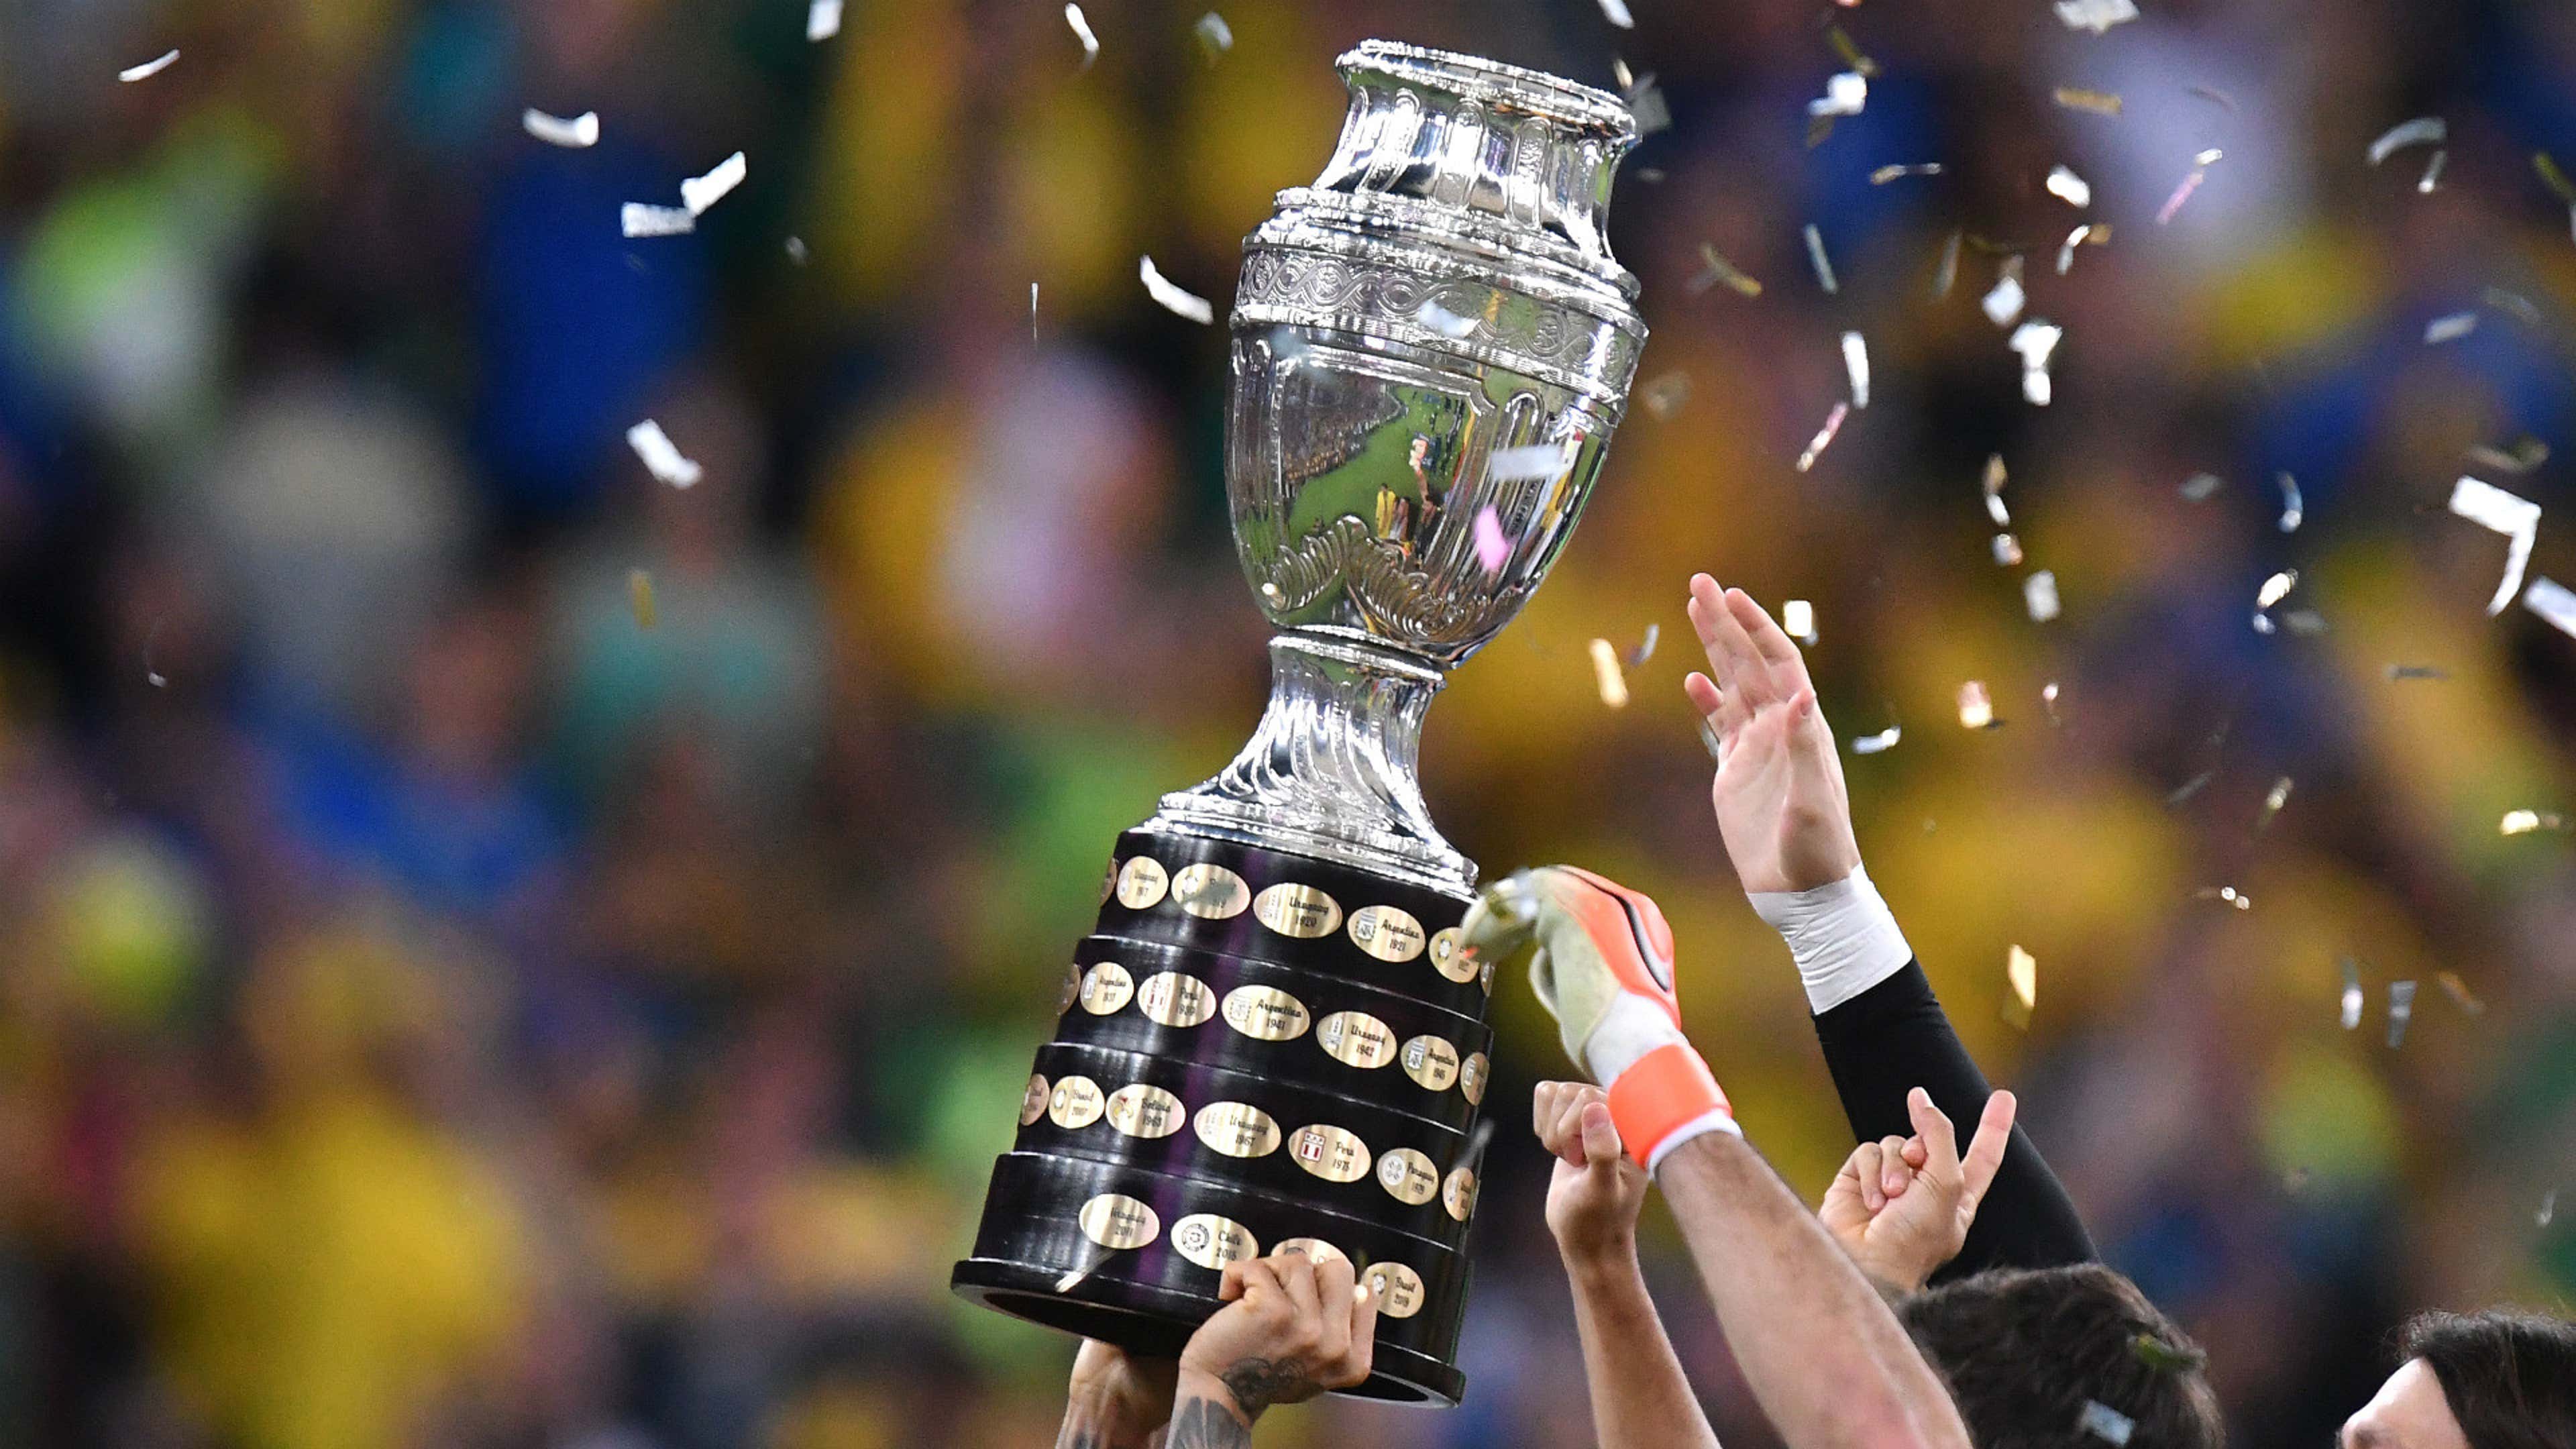 Grande final da Copa América 2021 - prévia e informações